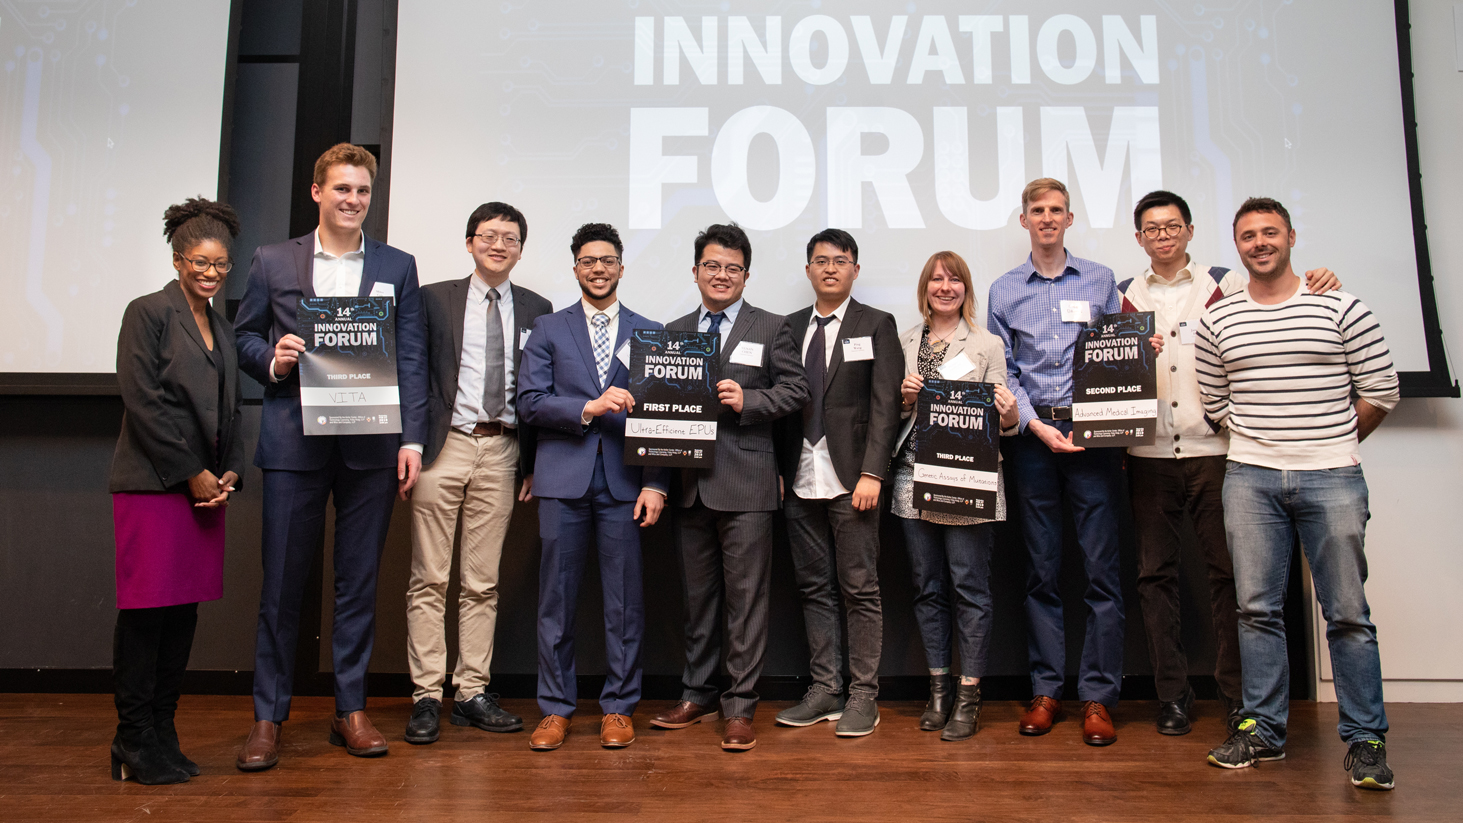 Innovation Forum 2019 winners